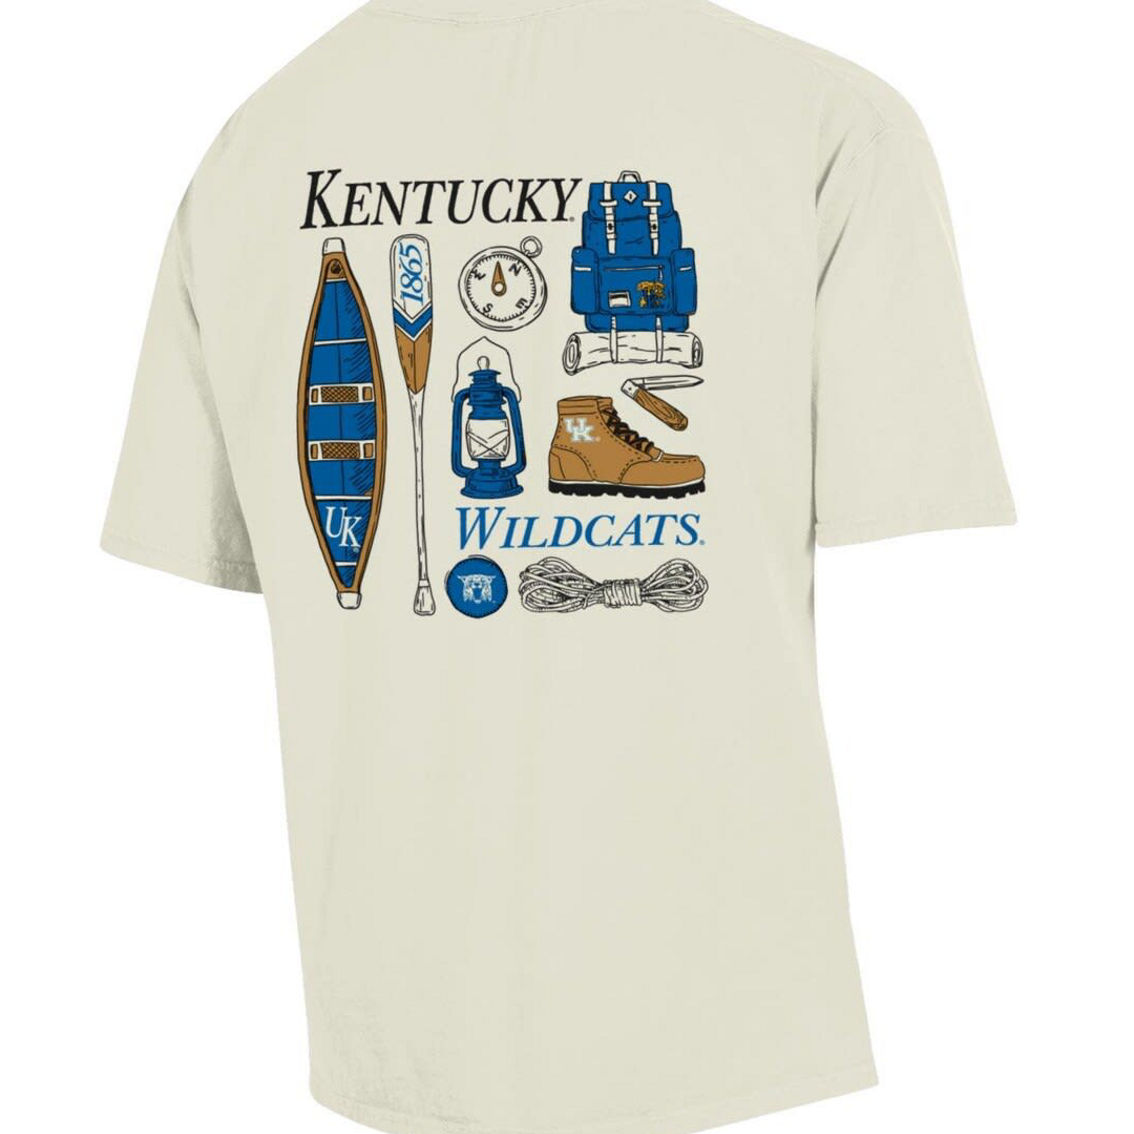 Comfort Wash Men's Comfort Wash Cream Kentucky Wildcats Camping Trip T-Shirt - Image 4 of 4